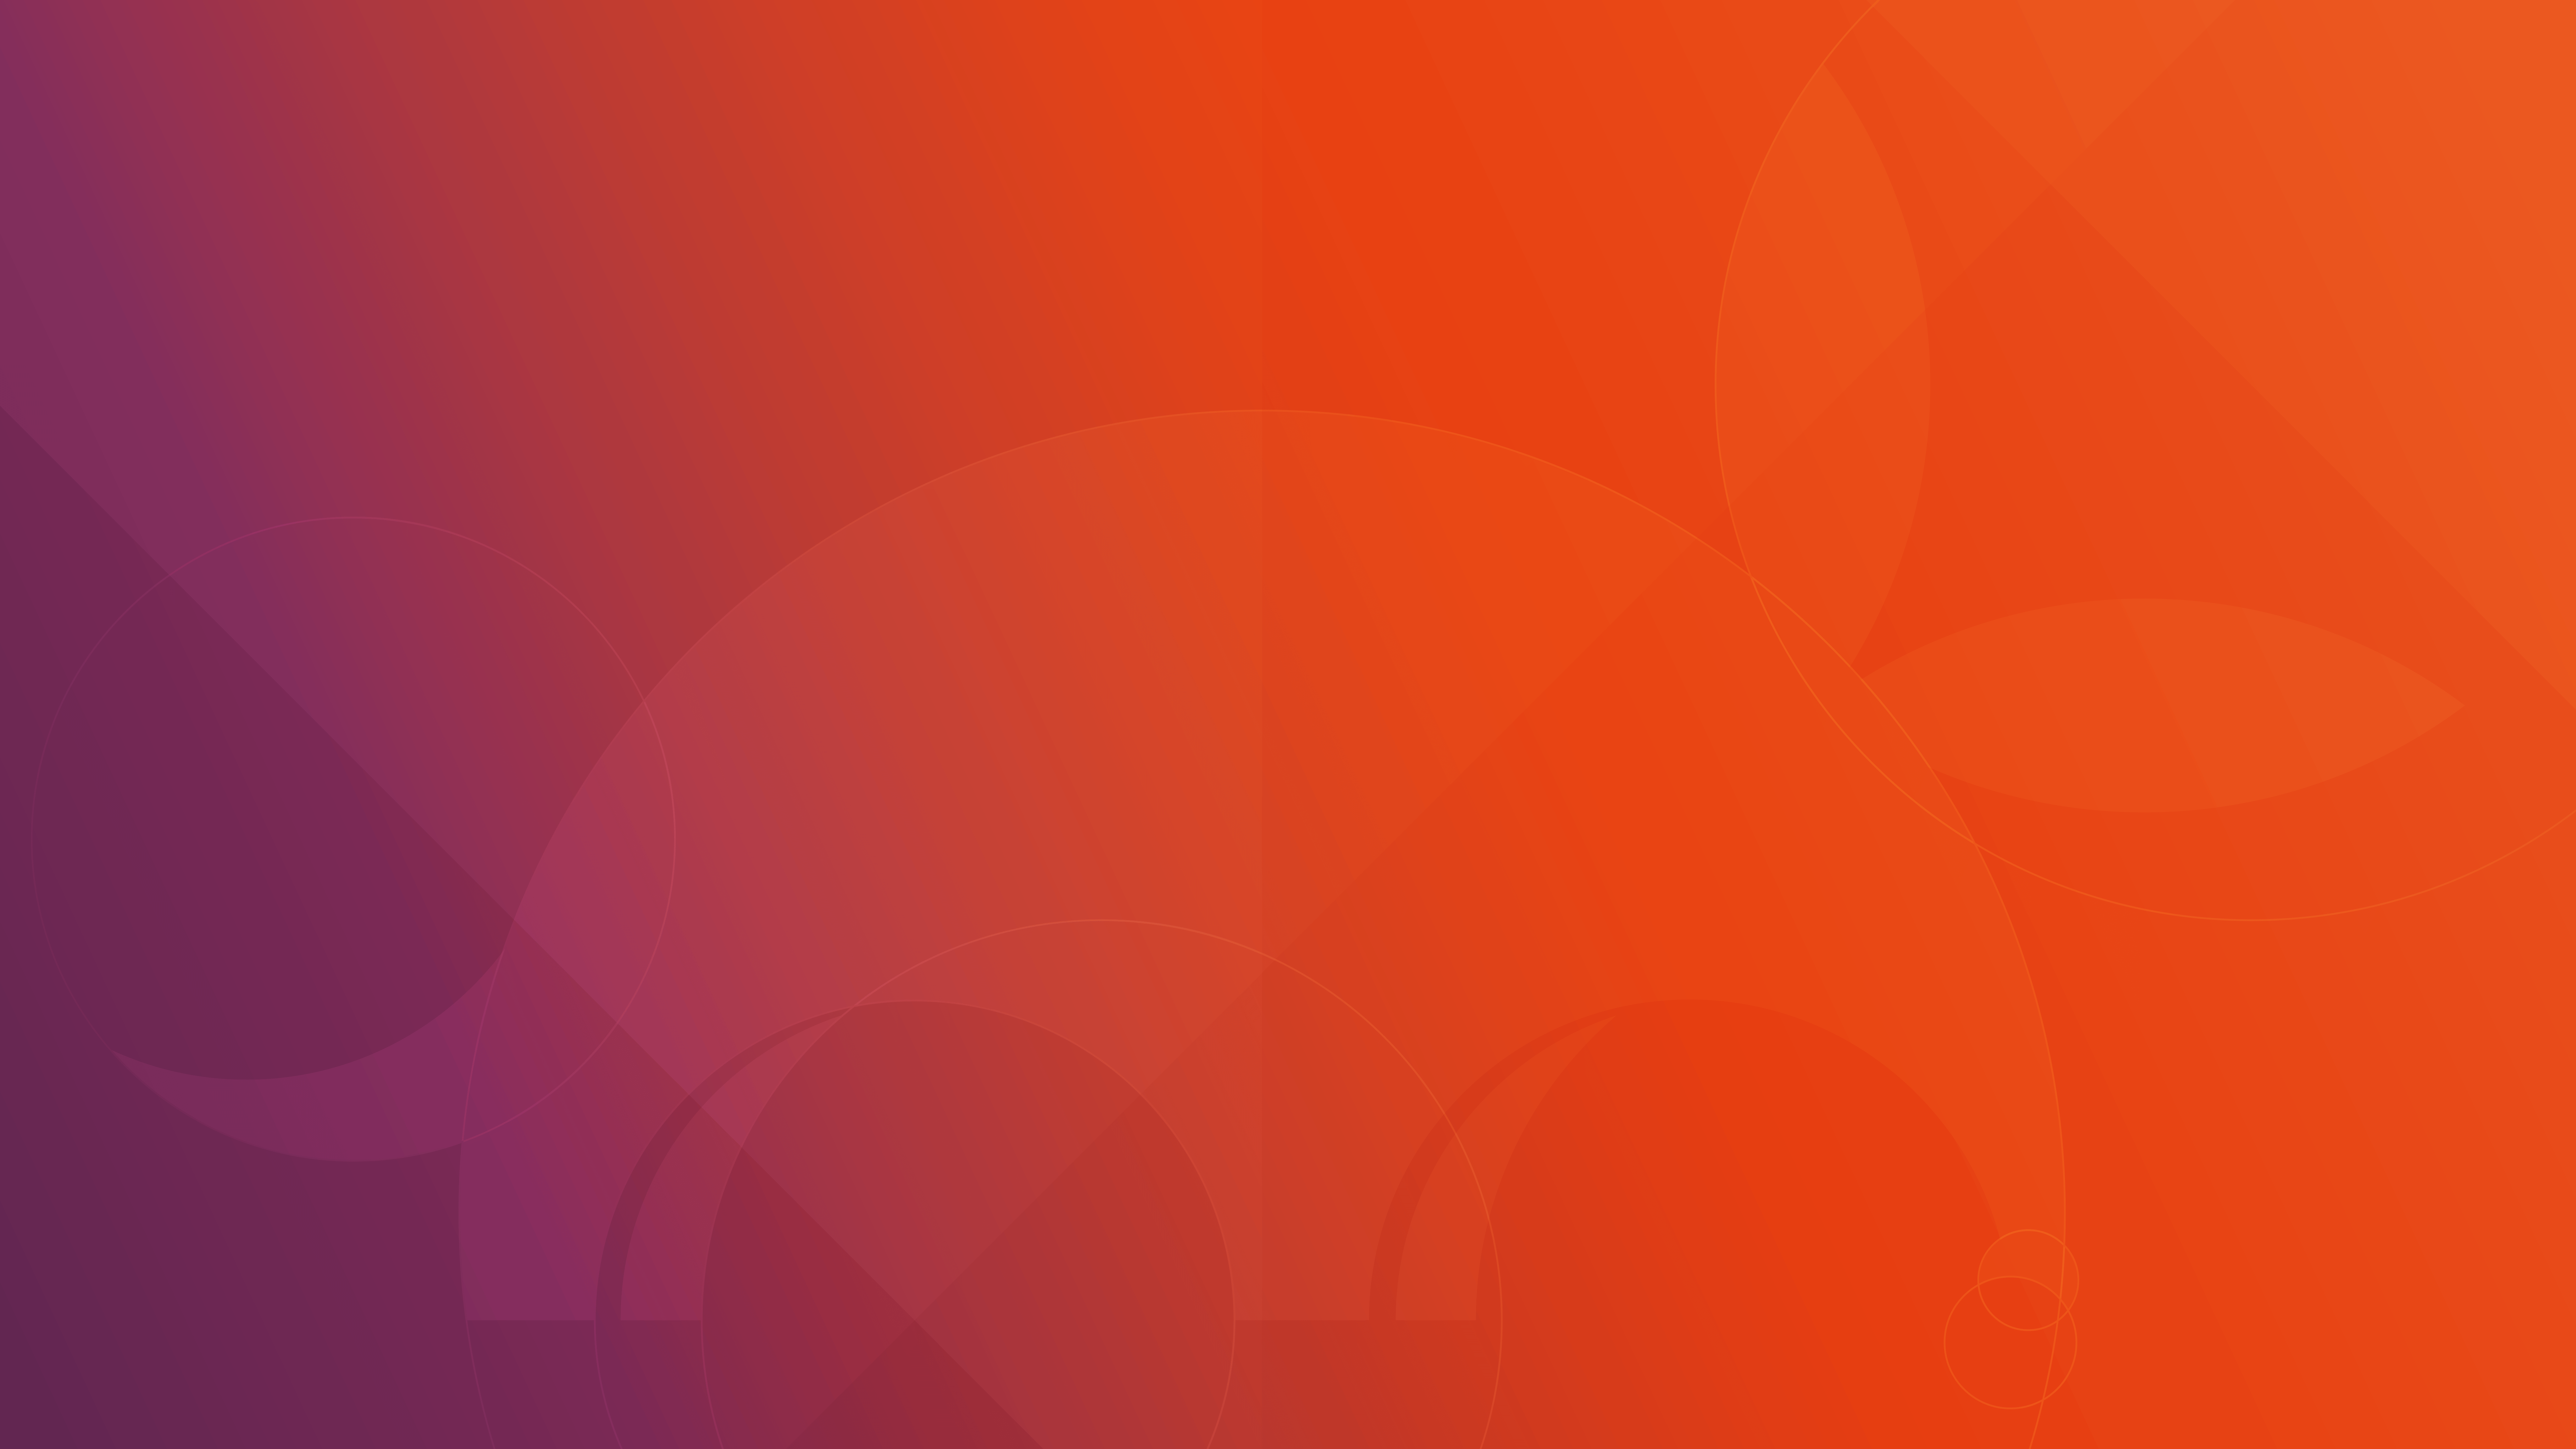 Ubuntu Stock Wallpaper